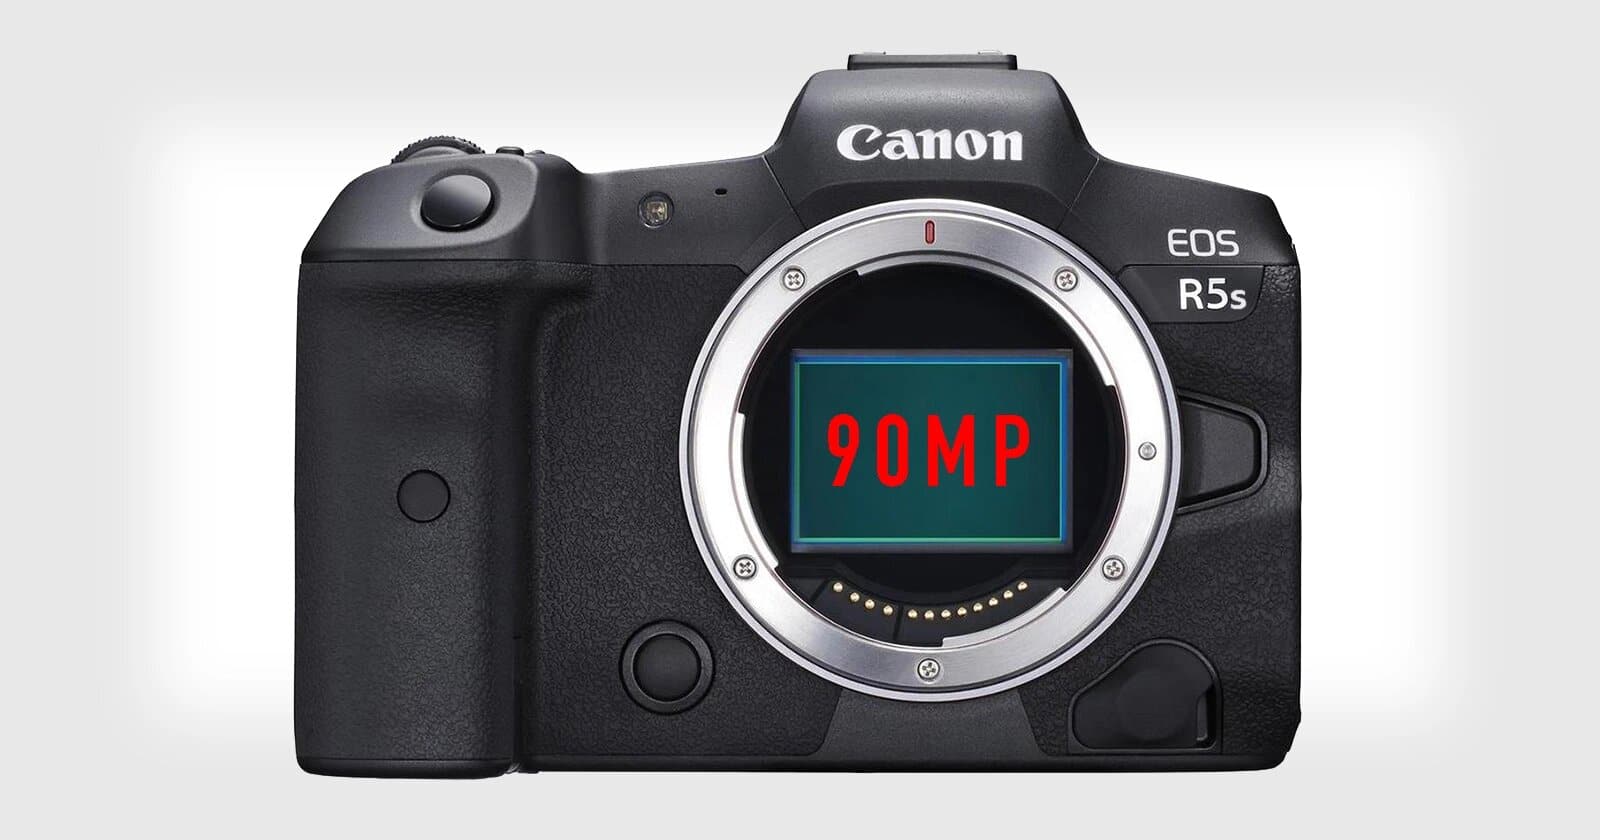 Canon đang thử nghiệm máy ảnh EOS R5s với cảm biến 90MP